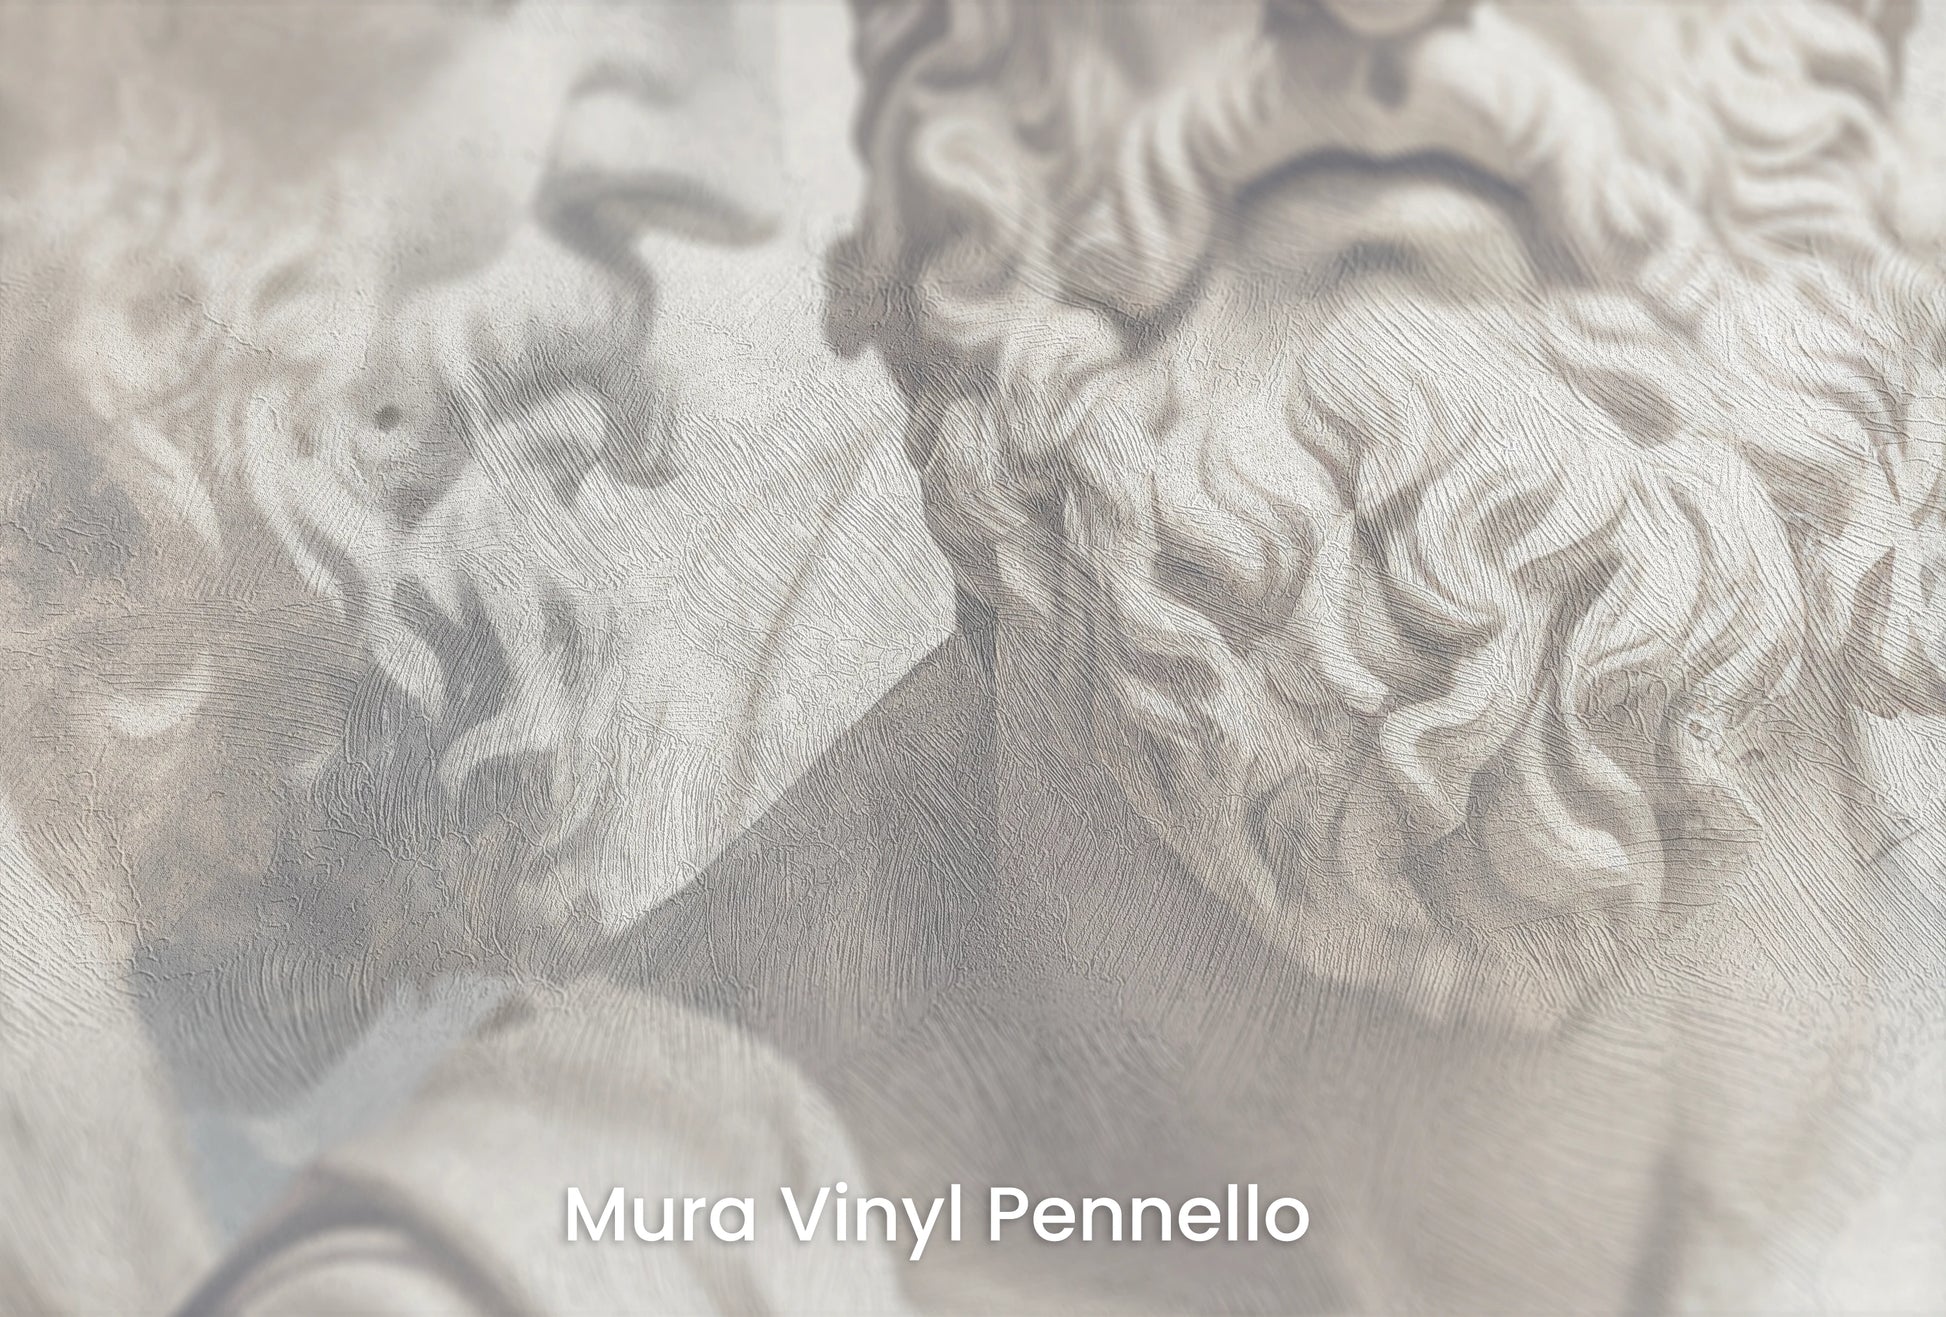 Zbliżenie na artystyczną fototapetę o nazwie Philosopher's Profile na podłożu Mura Vinyl Pennello - faktura pociągnięć pędzla malarskiego.